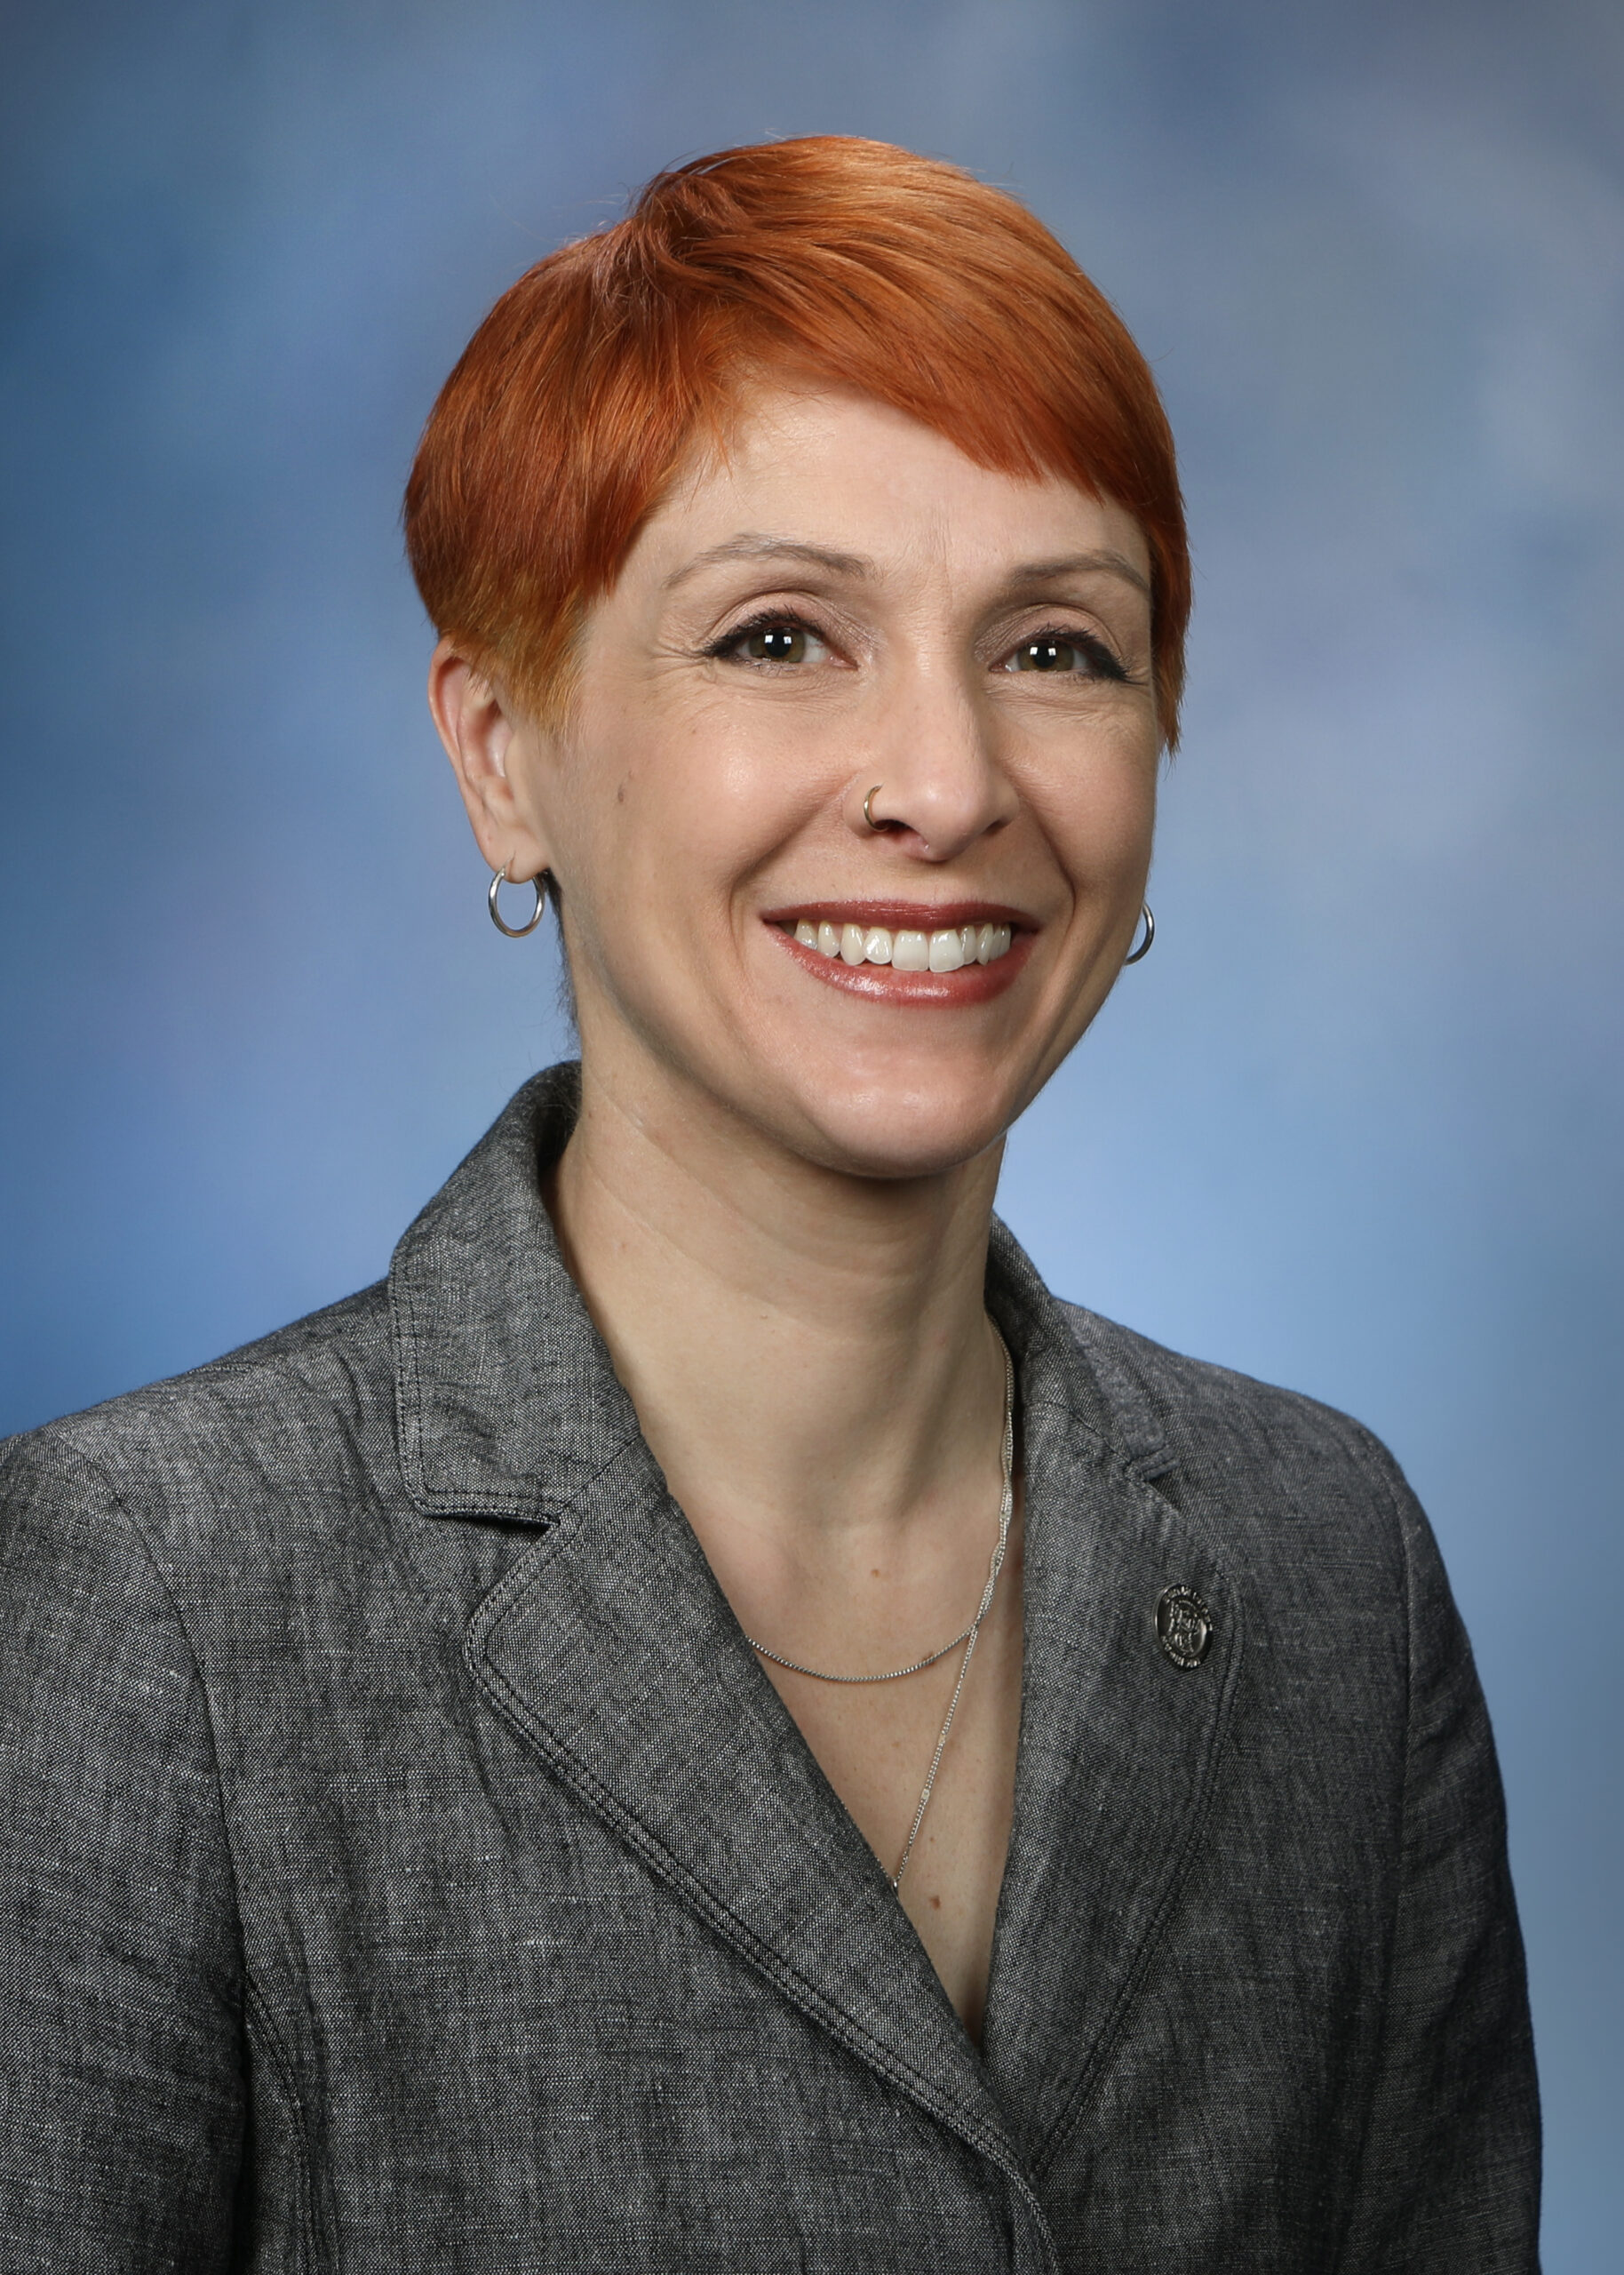  senator Emily Dievendorf